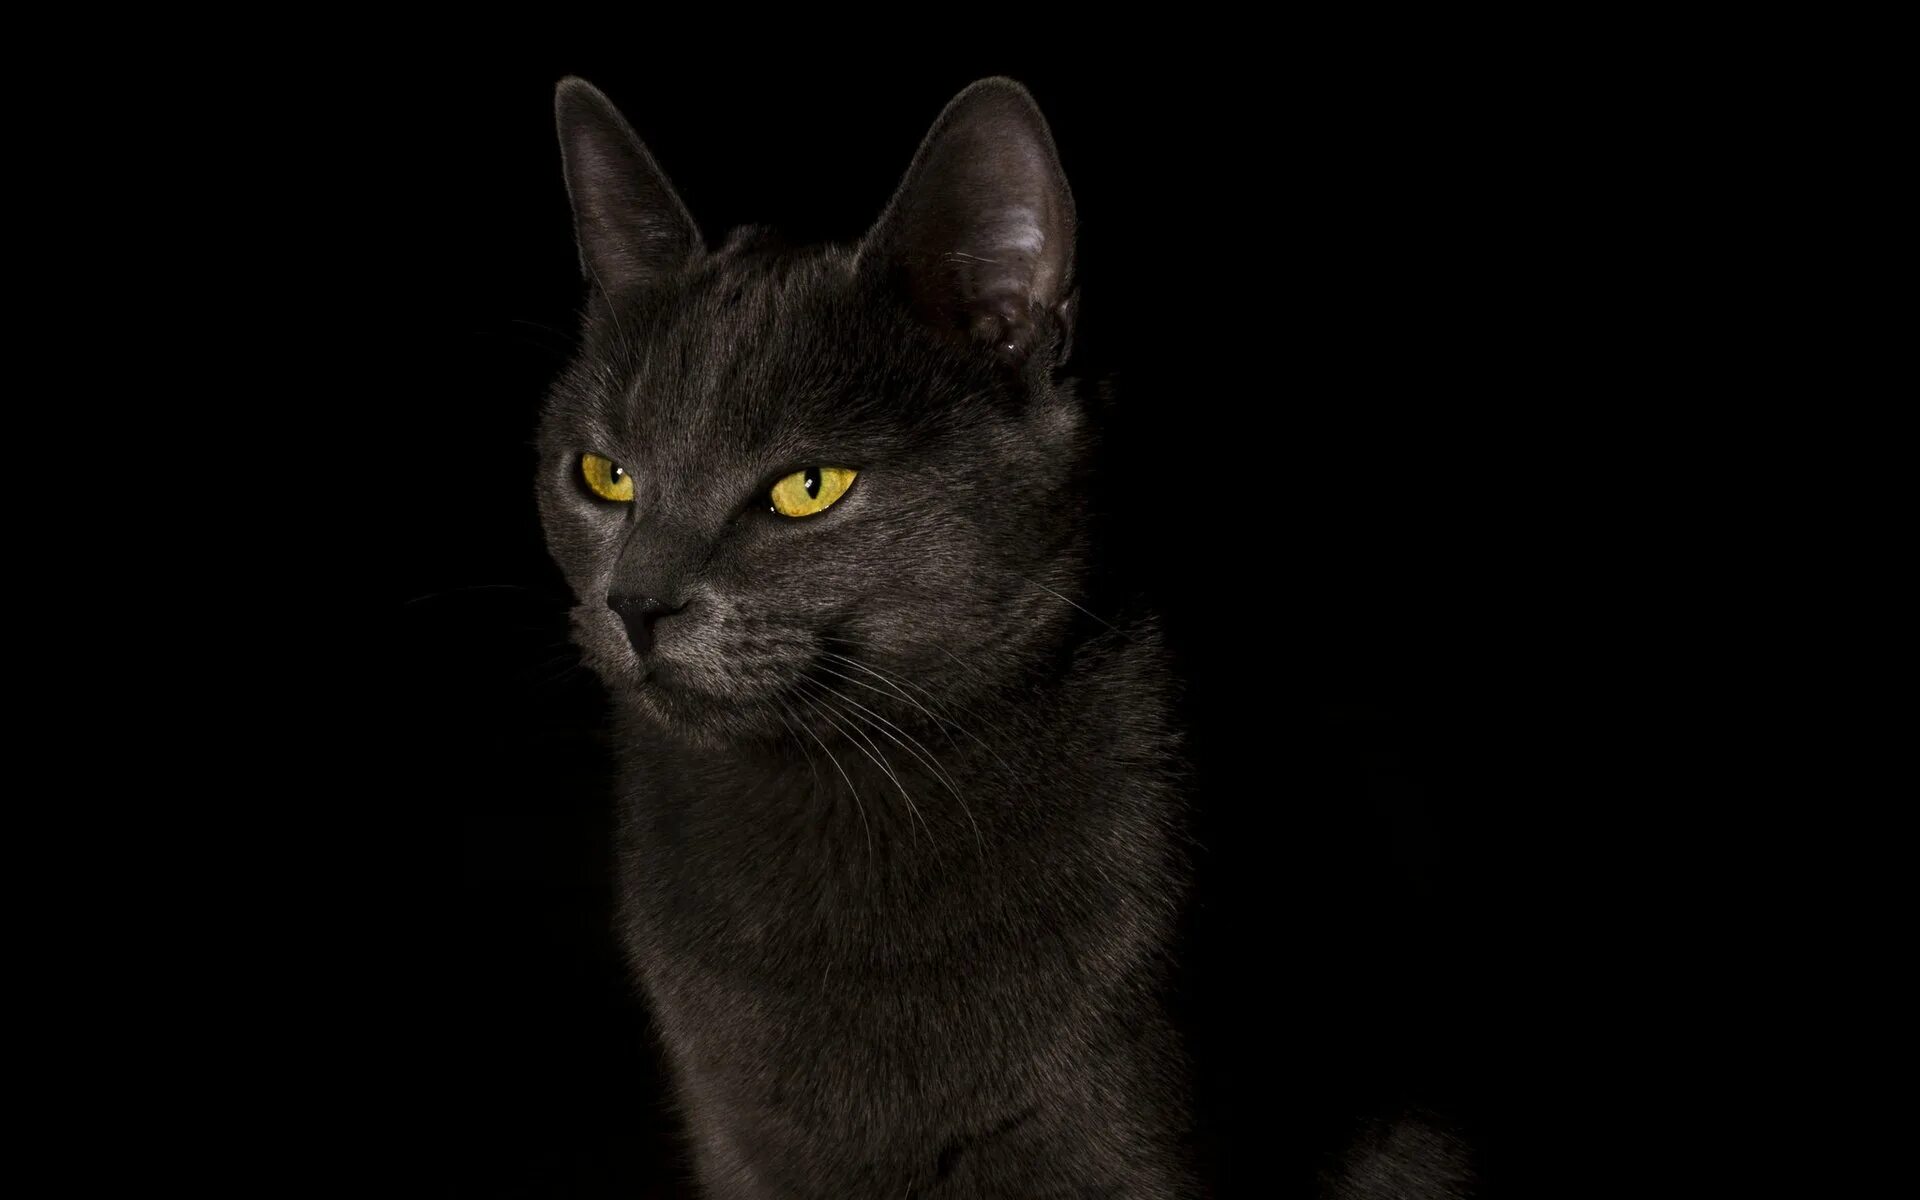 Черный фон картинка на обои. Черные обои. Обои на рабочий стол кошки. Фото кота на черном фоне. Черный фон картинка.